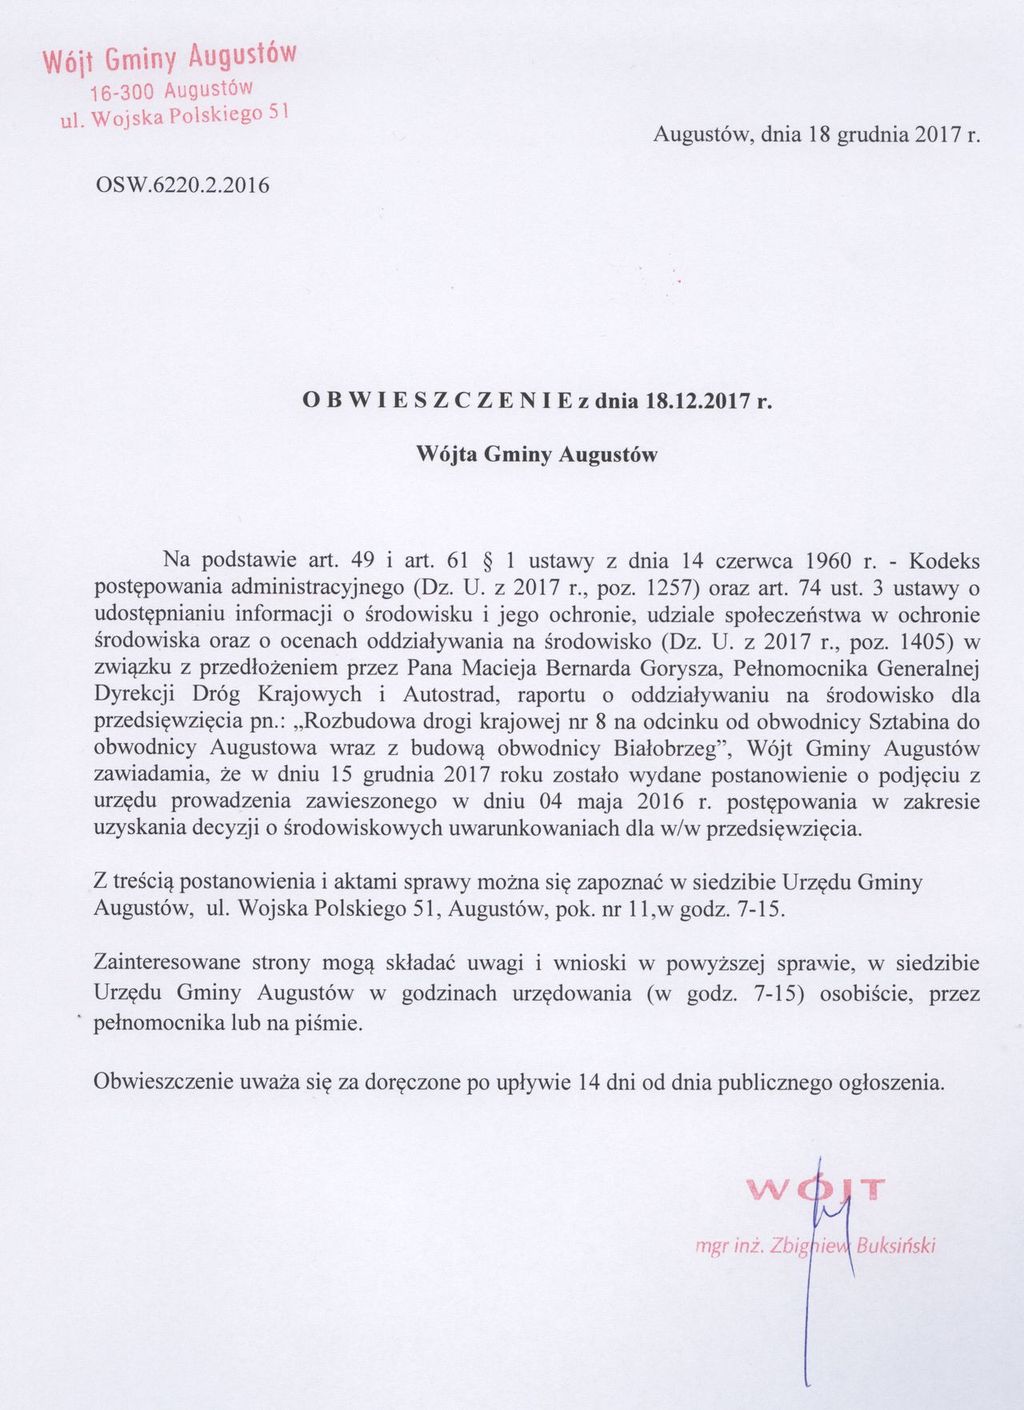 Obwieszczenie Wójta Gminy Augustów z dnia 18 grudnia 2017 roku.